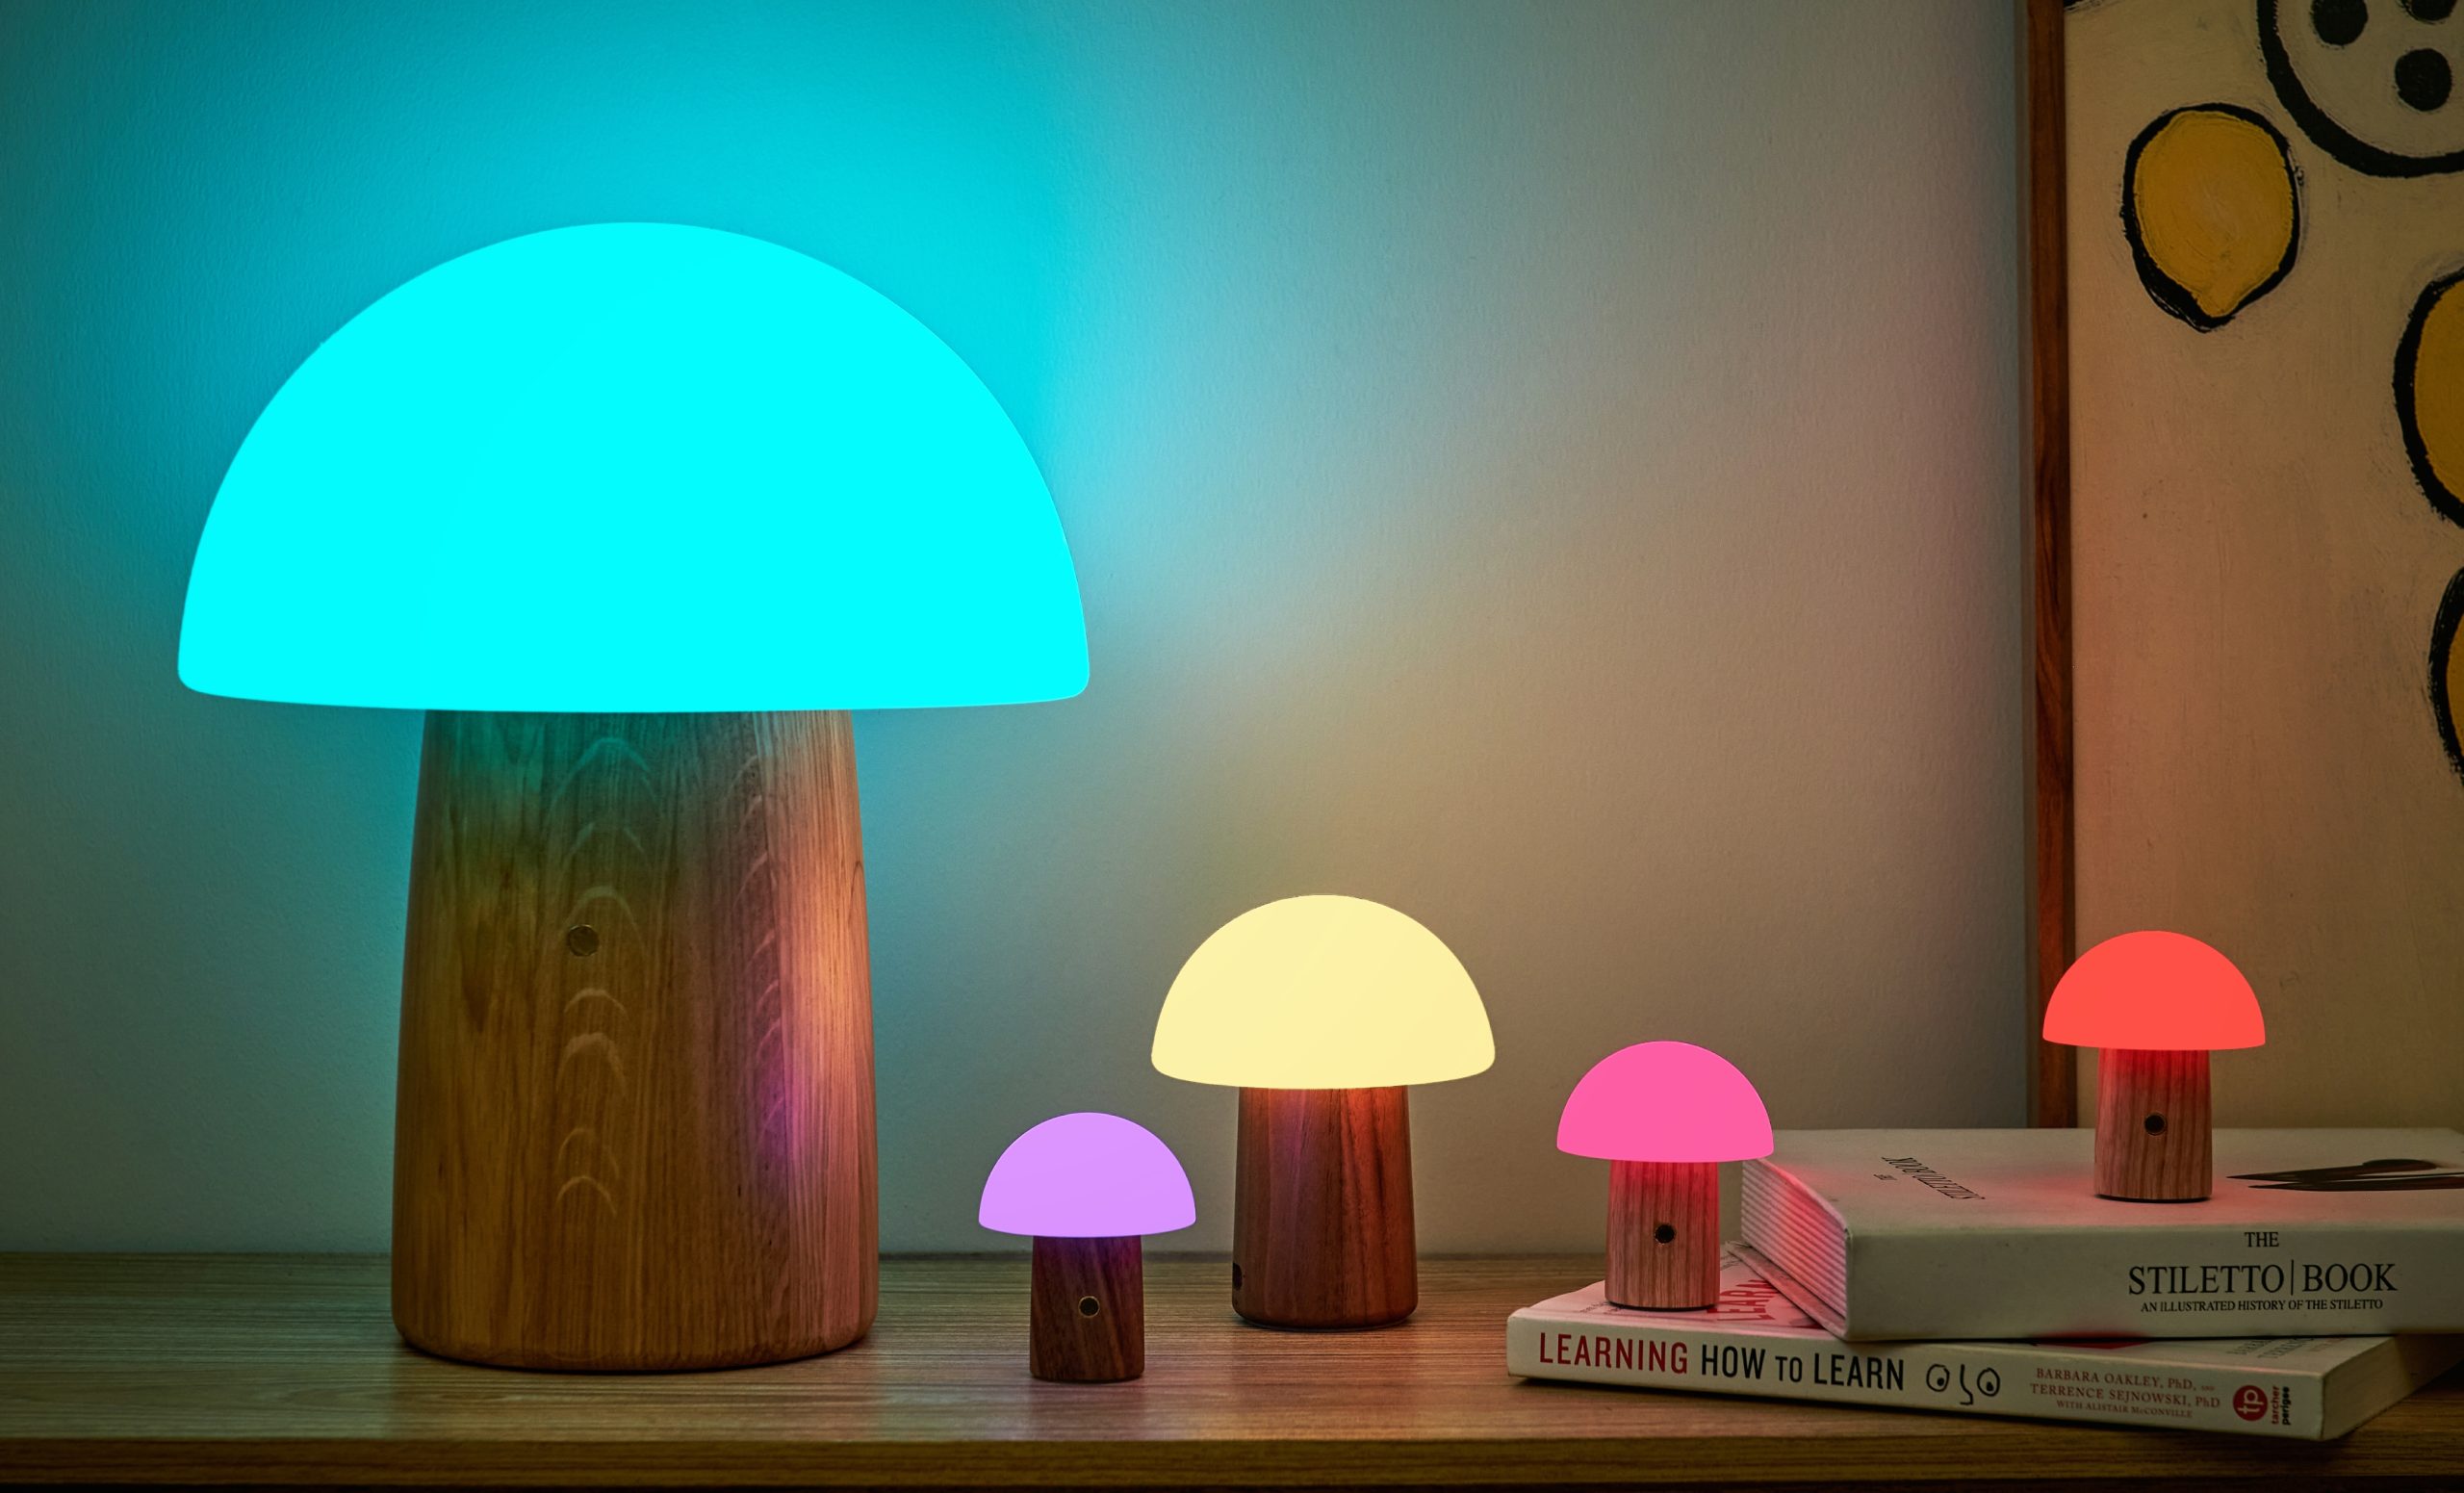 Gingko Design Alice Mushroom Lamp